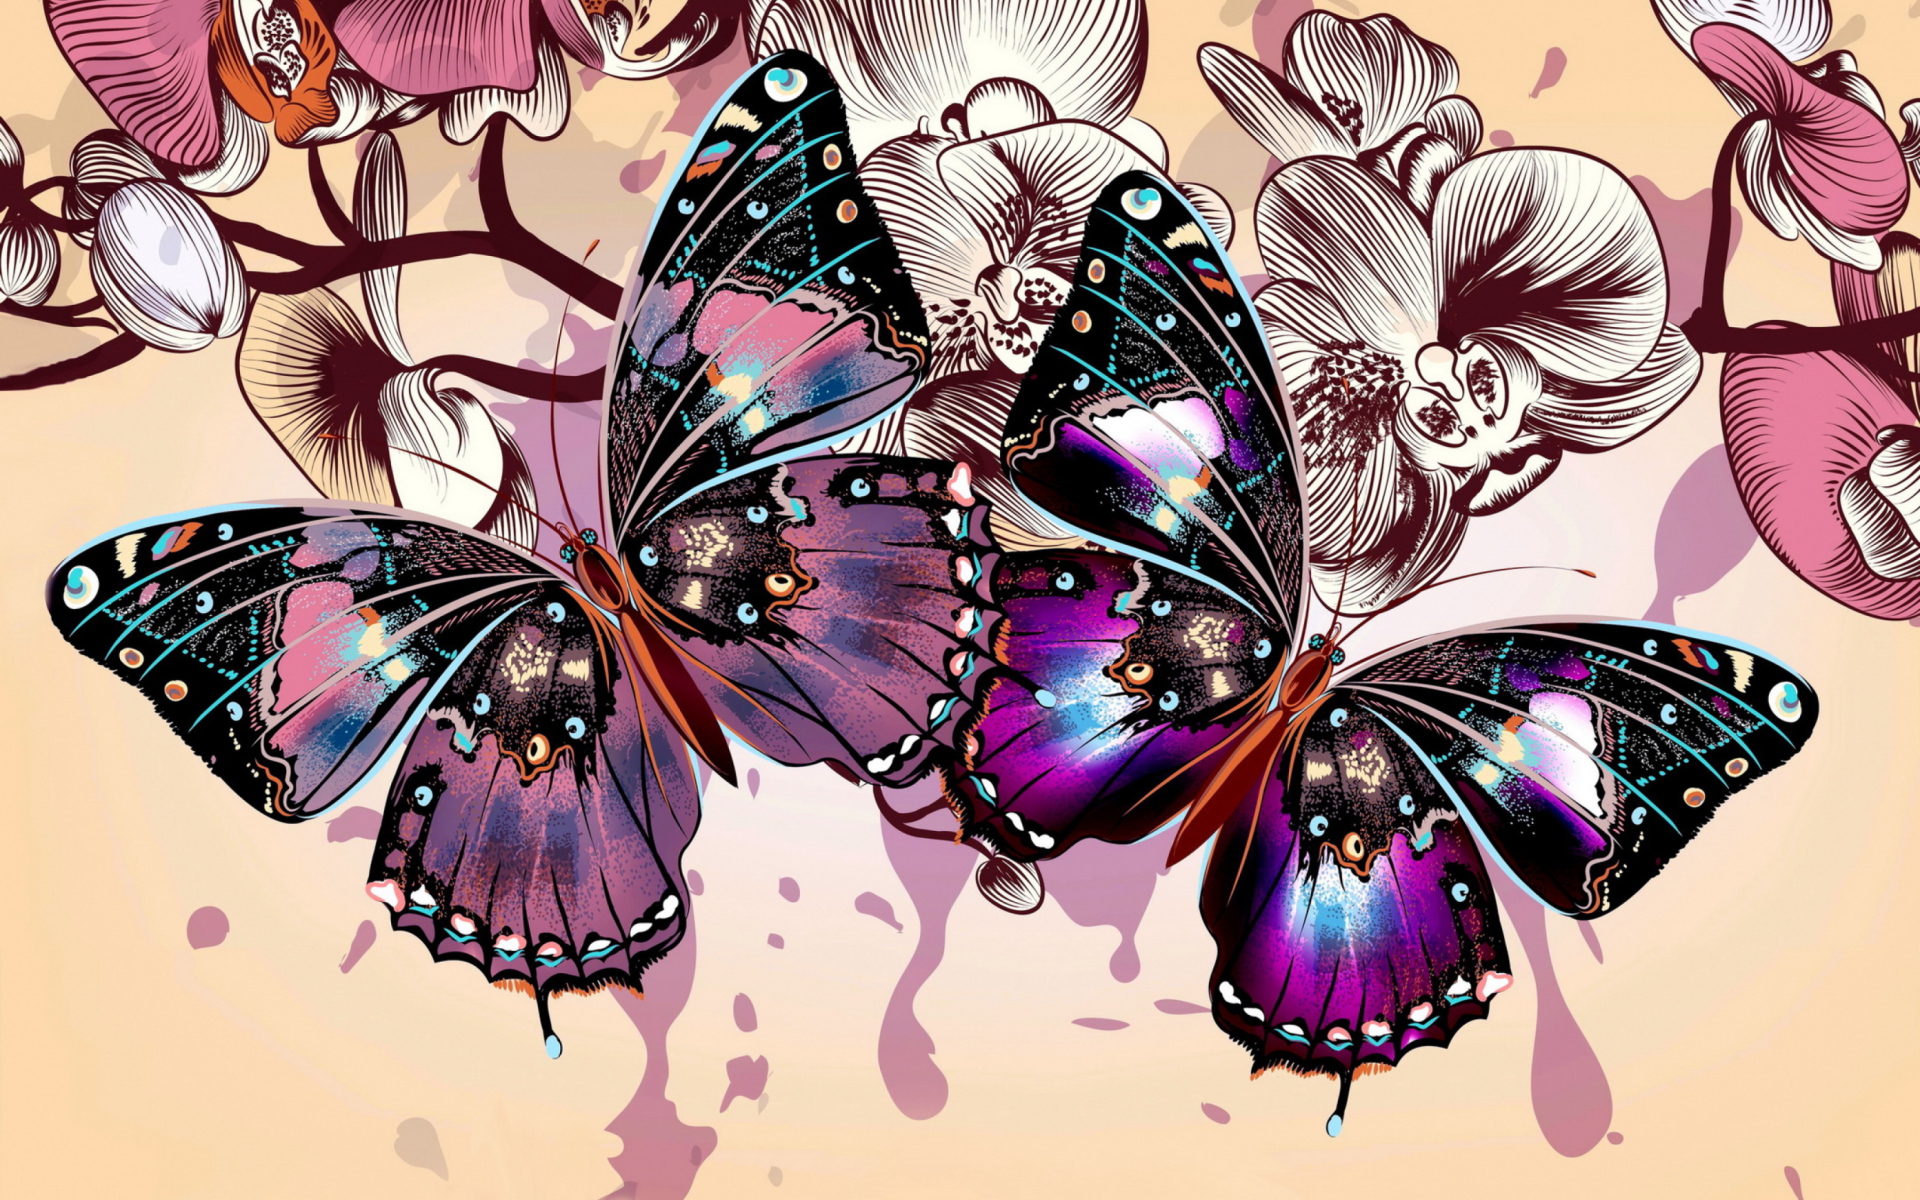 Скачать обои бесплатно Бабочка, Орхидея, Художественные картинка на рабочий стол ПК